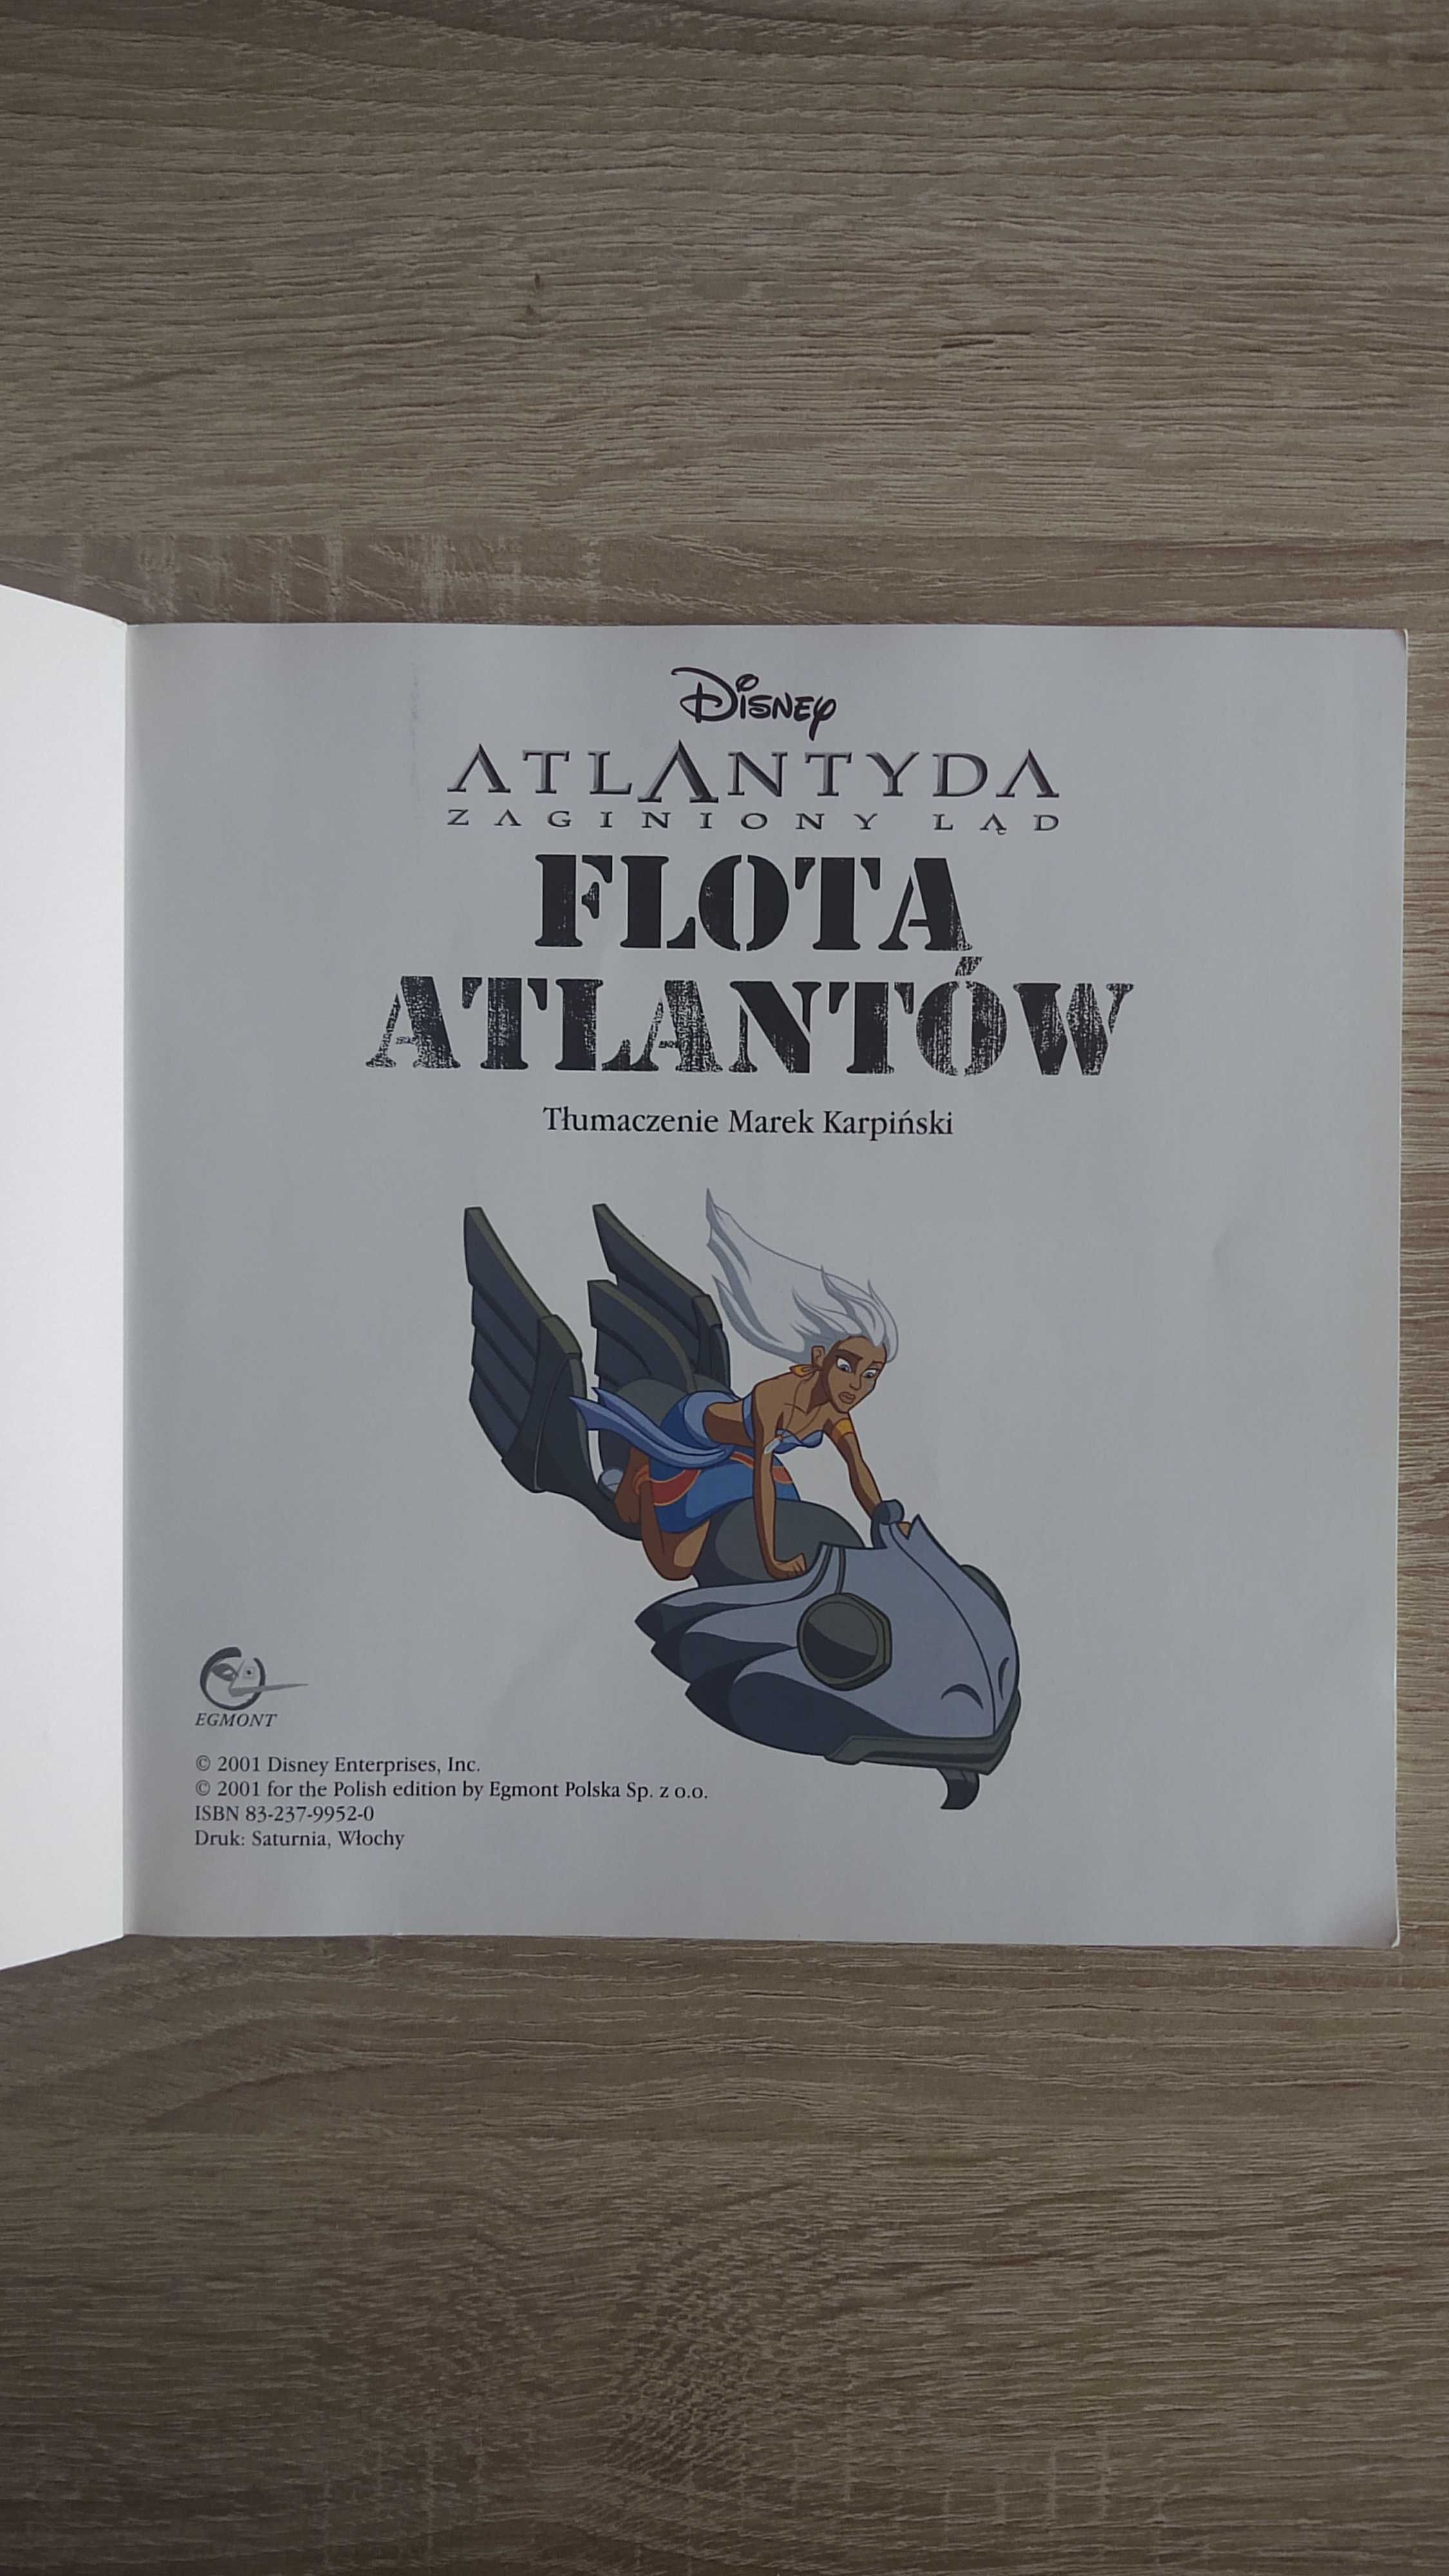 Atlantyda zaginiony ląd. Flota atlantów, Disney, książka z naklejkami